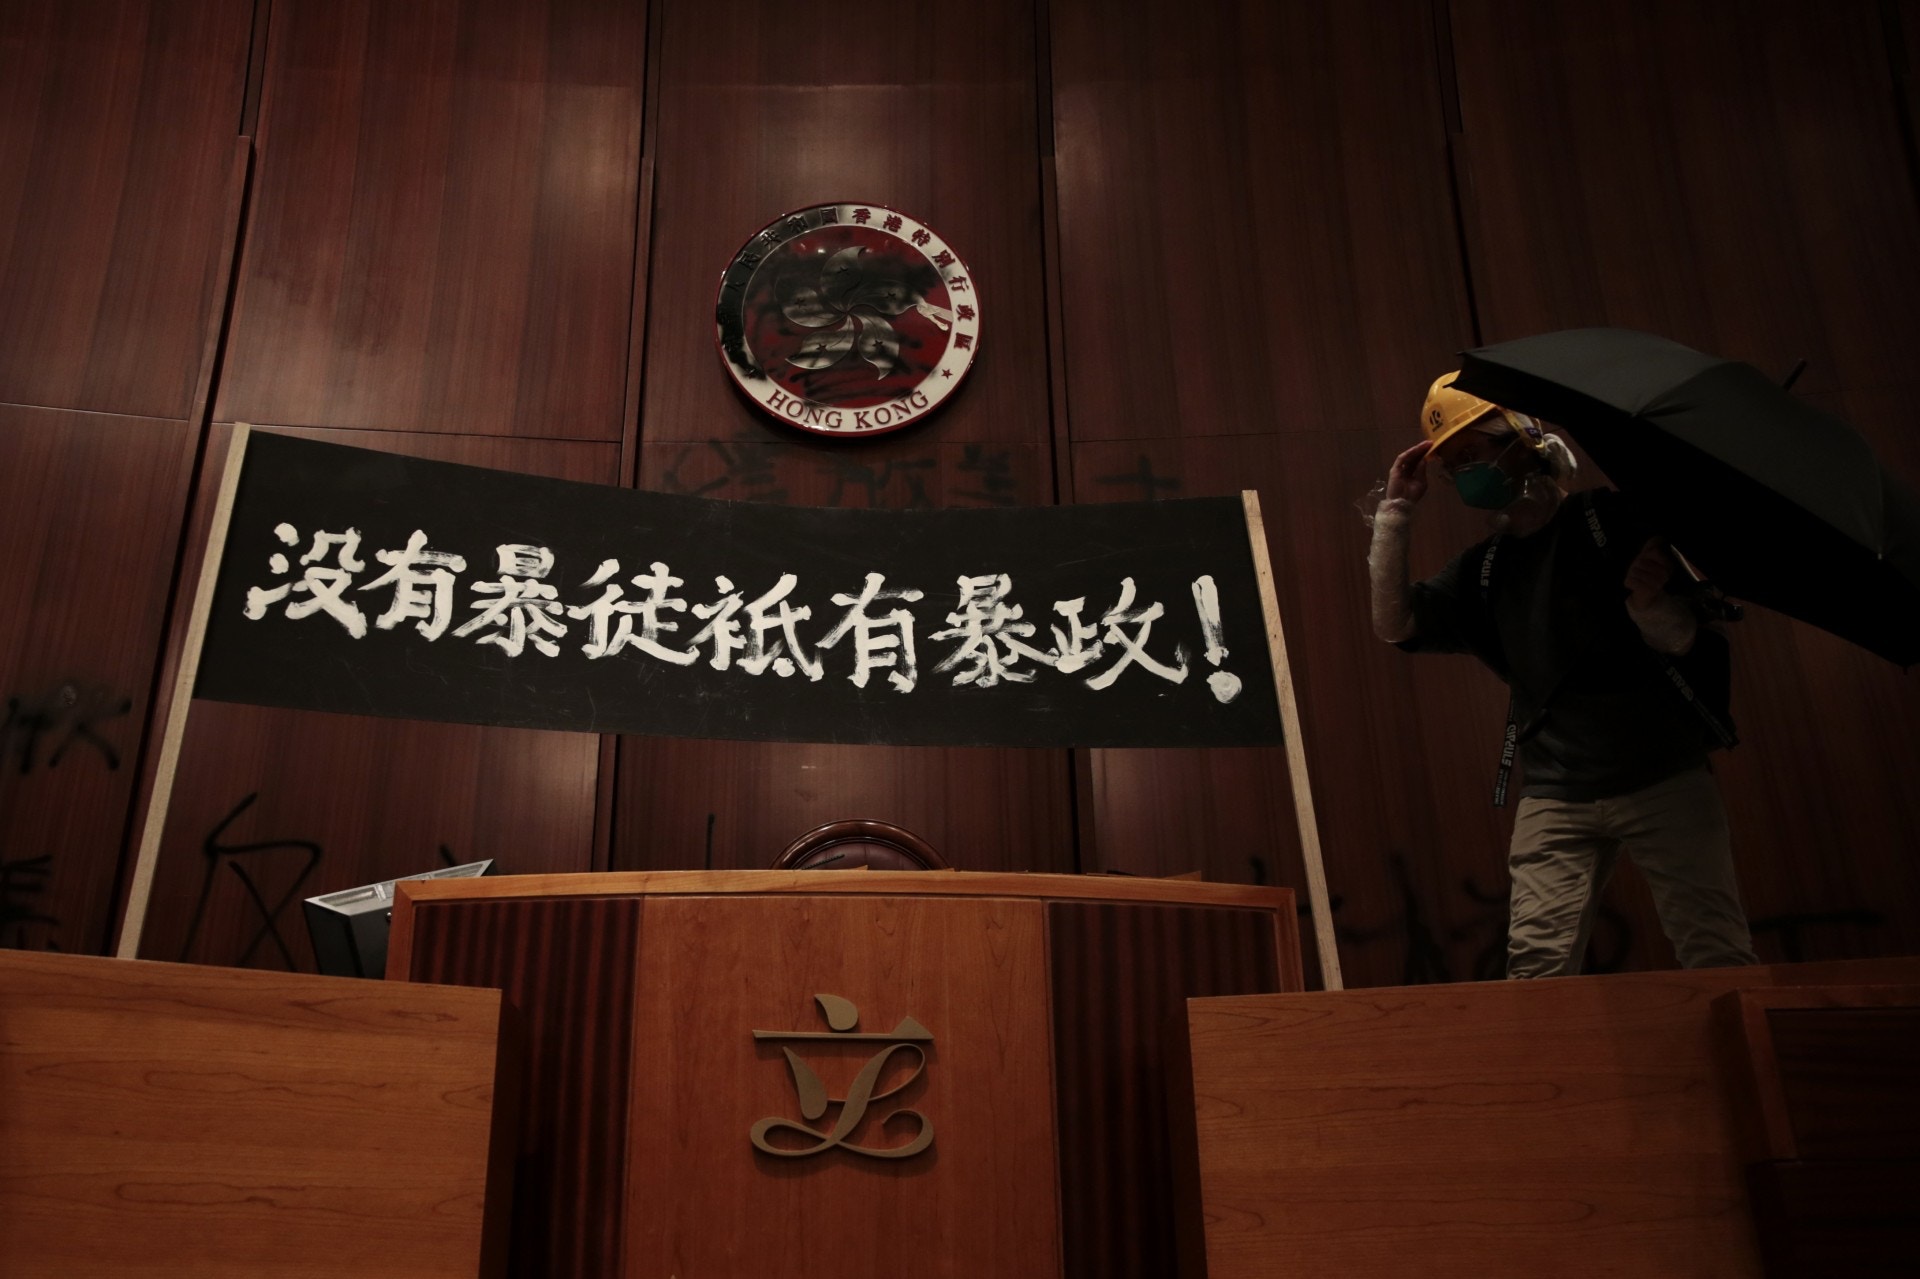 示威者在立法会内，竖立起“没有暴民，只有暴政”的示威标语。而立法会内的香港特区区徽，已被示威者涂黑。